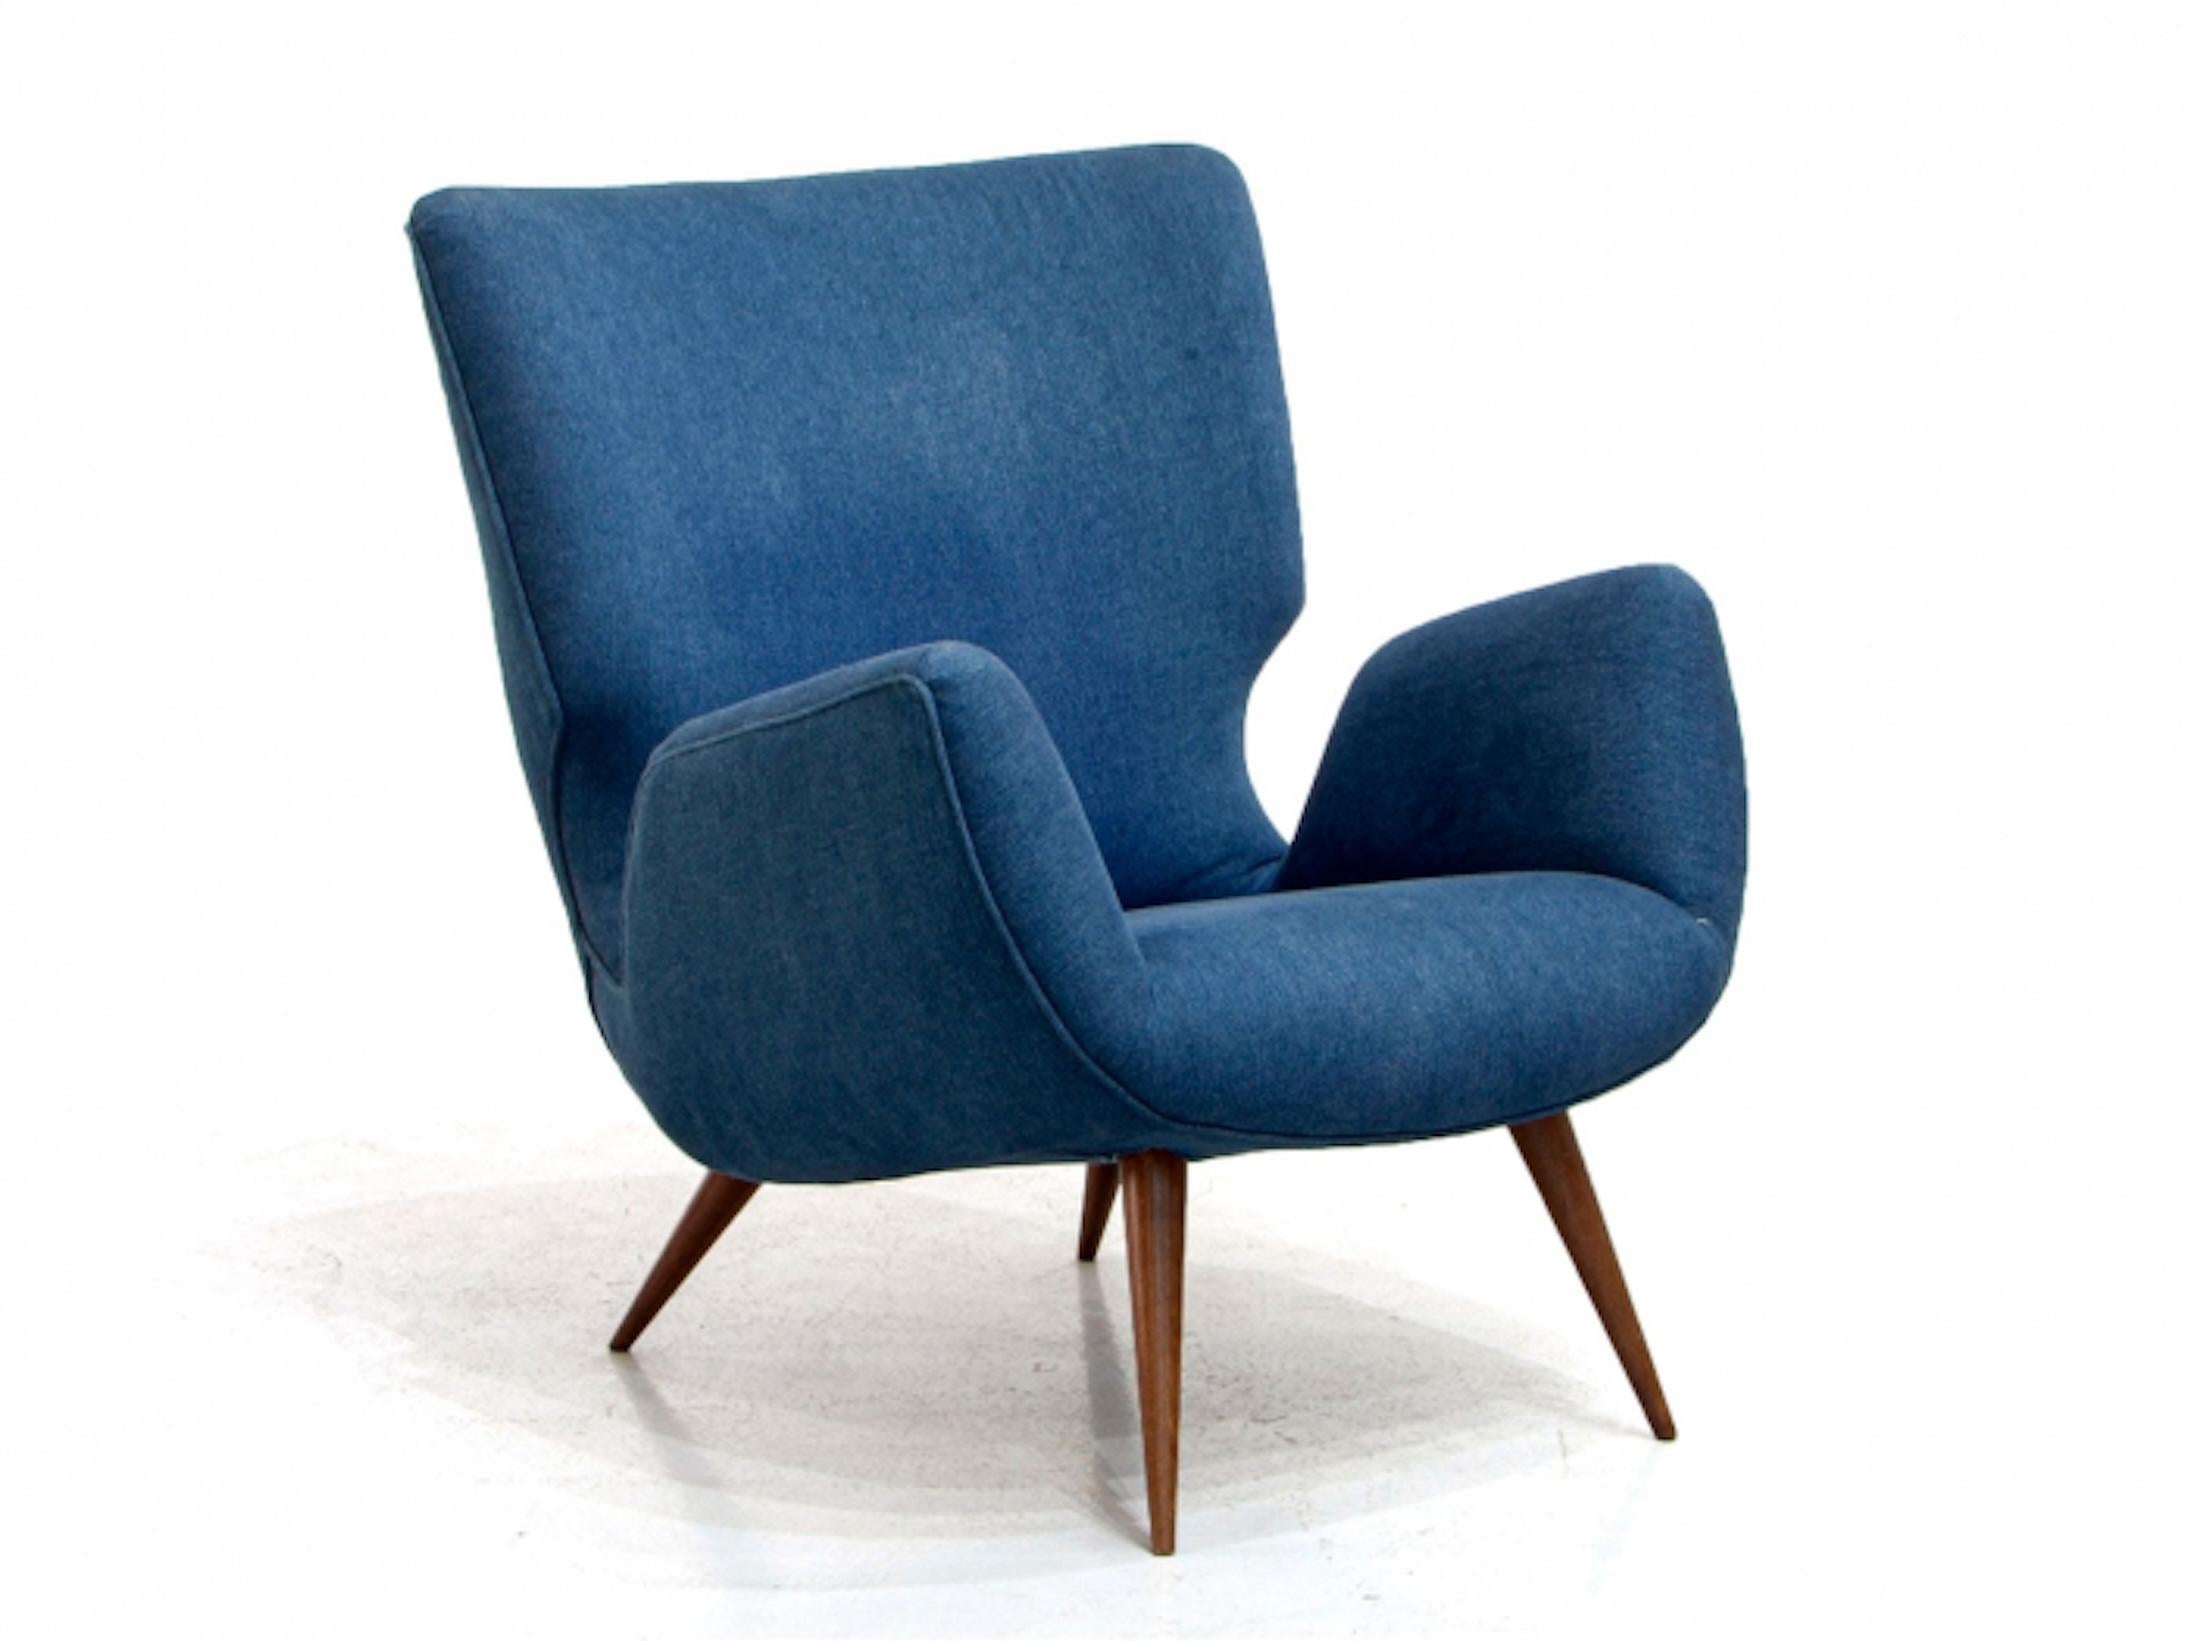 Dieser Sessel ist ein typischer Entwurf Carlo Hauners aus den 1950er Jahren und ruht auf vier konischen Beinen, die im Brasilianischen als 